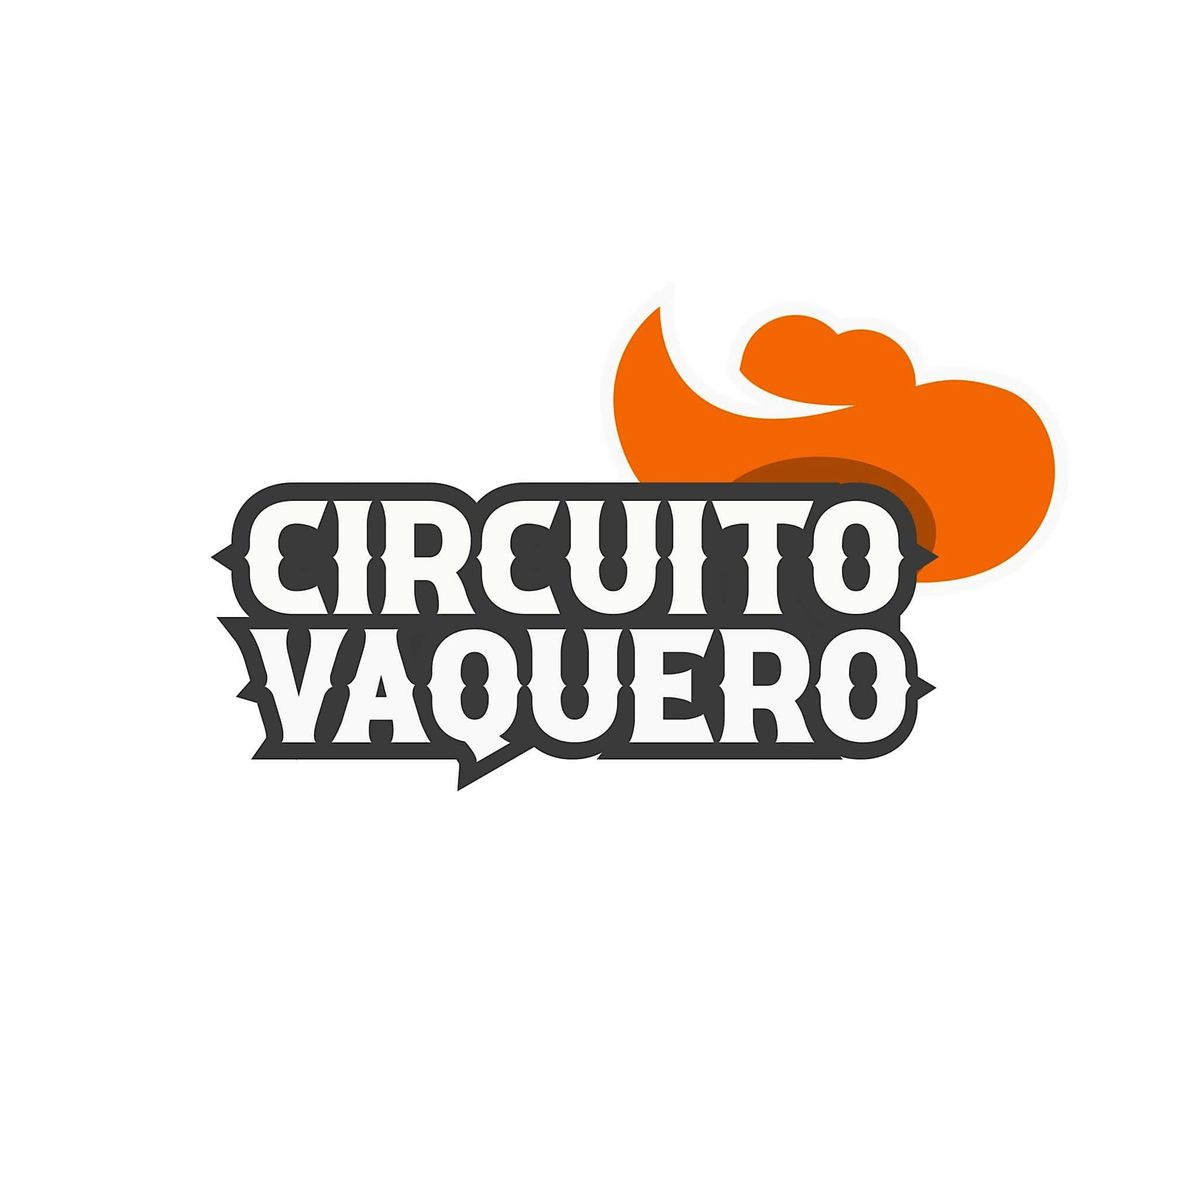 CIRCUITO VAQUERO By TREK BIKES 4 YOU\/ Metro Cycling League